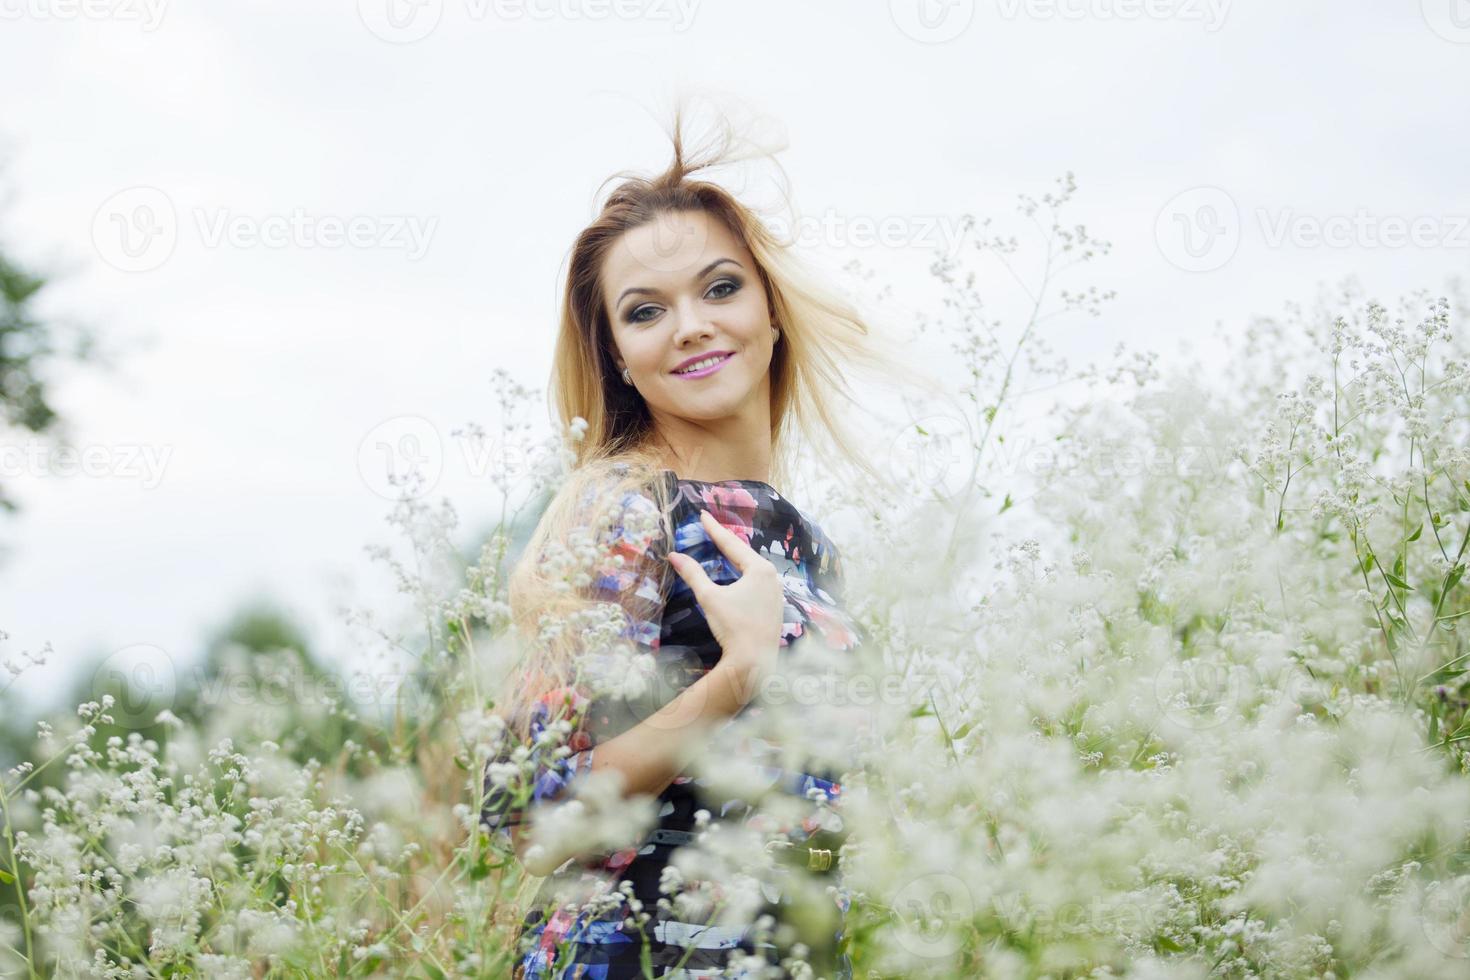 menina de beleza ao ar livre curtindo a natureza, garota loira de vestido na foto